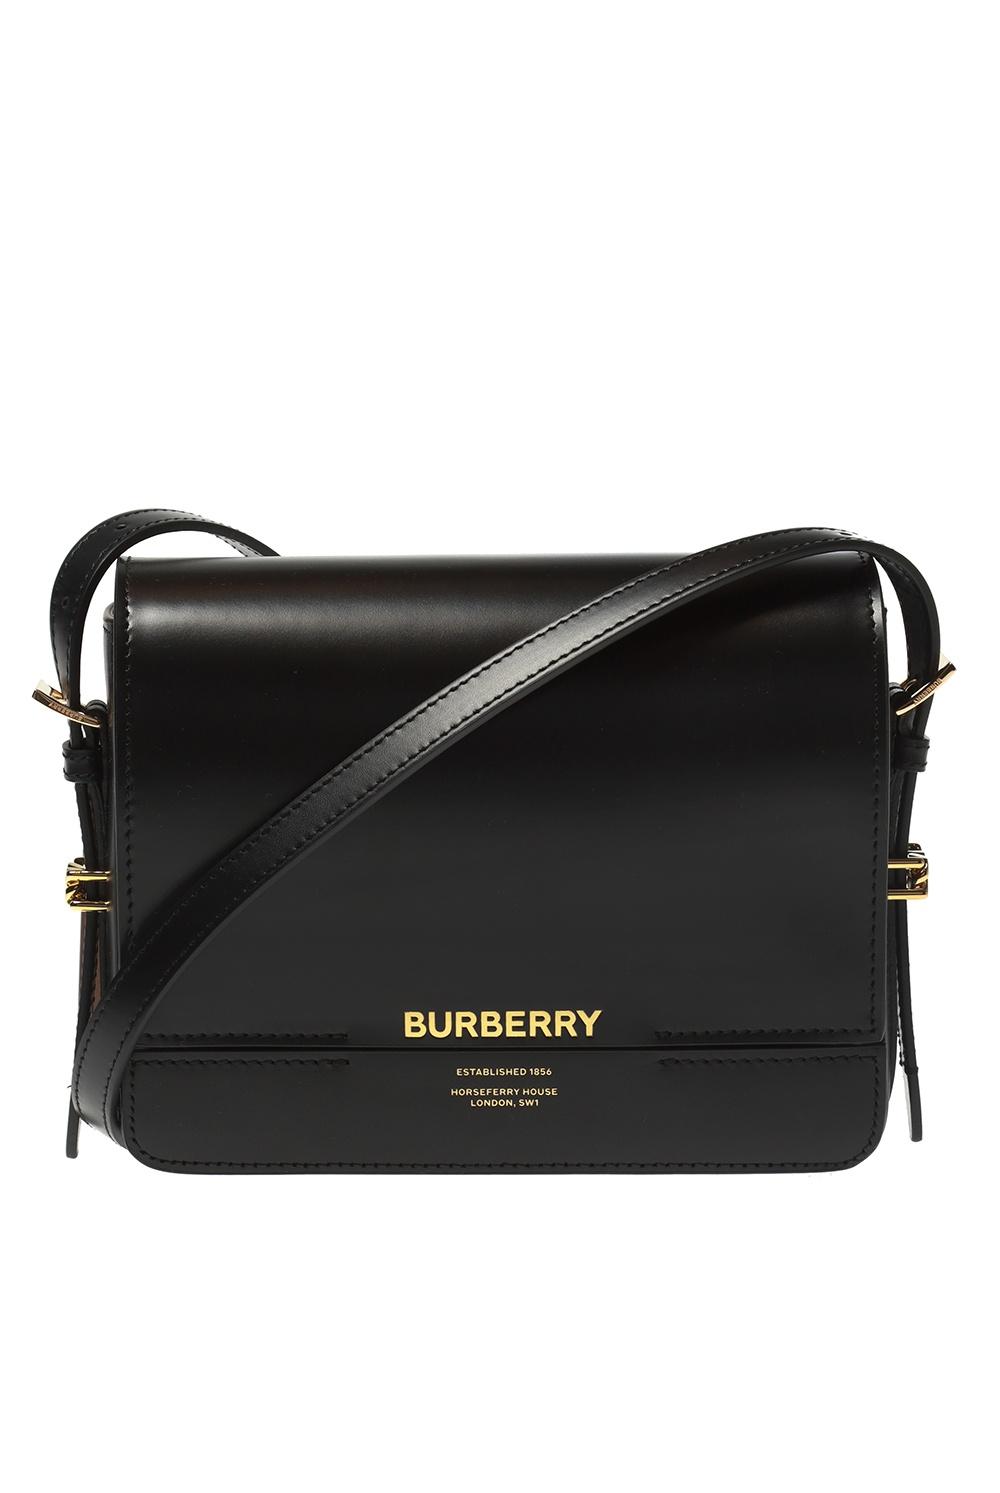 Burberry Leather 'grace' Shoulder Bag in Black | Lyst